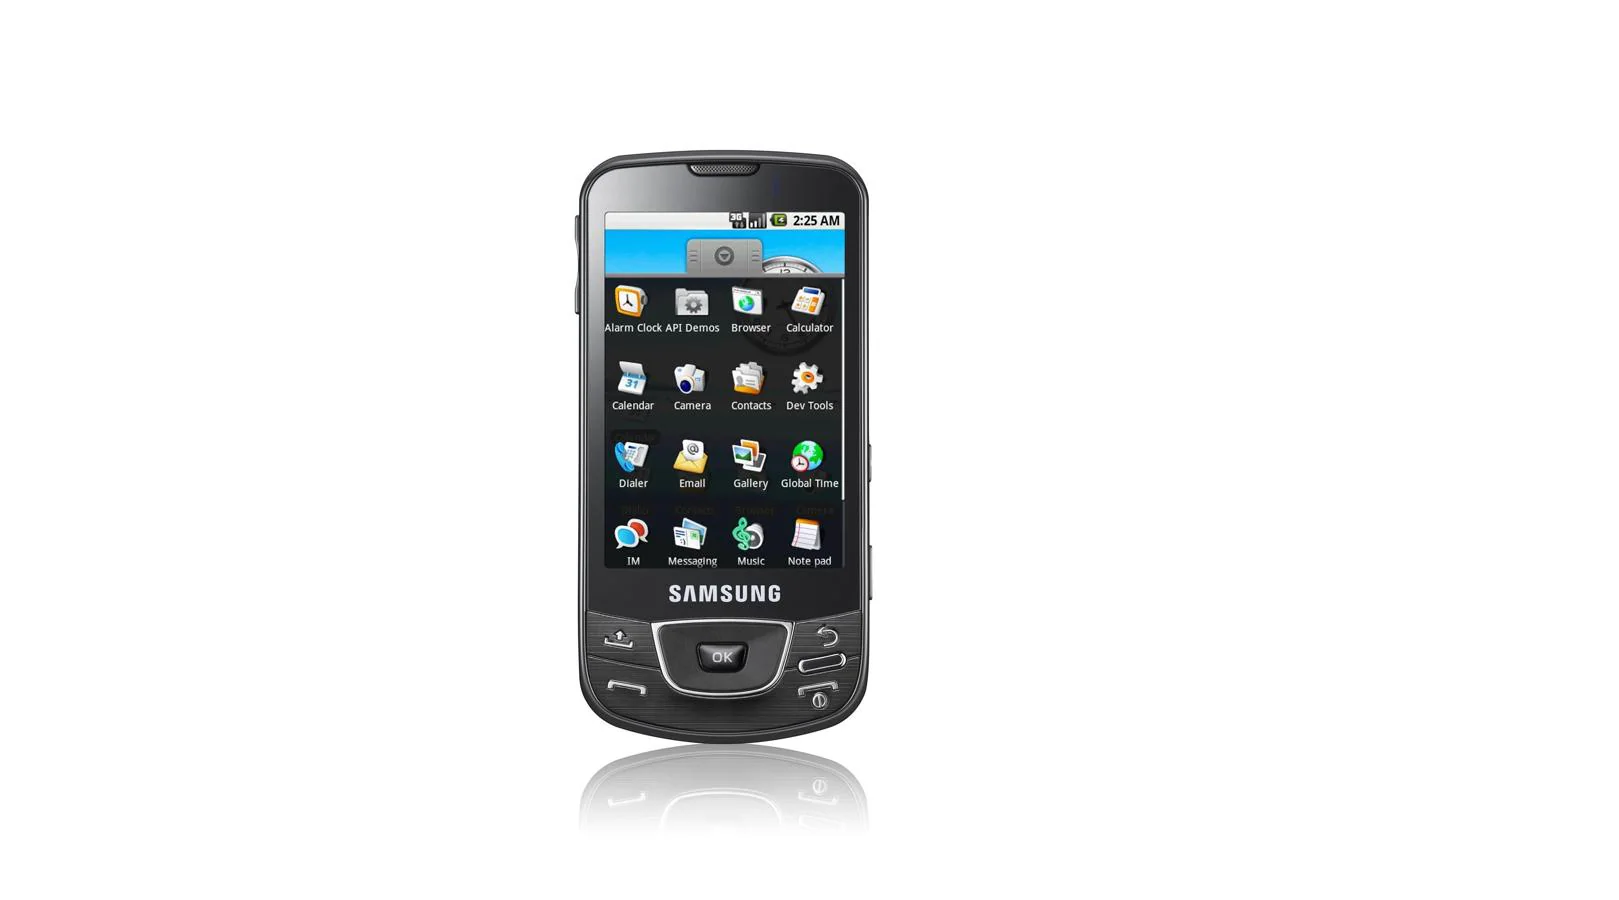 El comienzo de una era. La llegada del modelo original de Galaxy, en 2009, supuso un hito en el sector, aunque lo hizo de manera casi silenciosa. Su nombre técnico era GT-I7500. Incluyó una pantalla de tipo Amoled de 3.2 pulgadas, una cámara con autofocus de solo 5 megapíxeles e incorporó la clavija de auriculares de 3.5 milímetros. Gobernado por el sistema operativo Android, el terminal